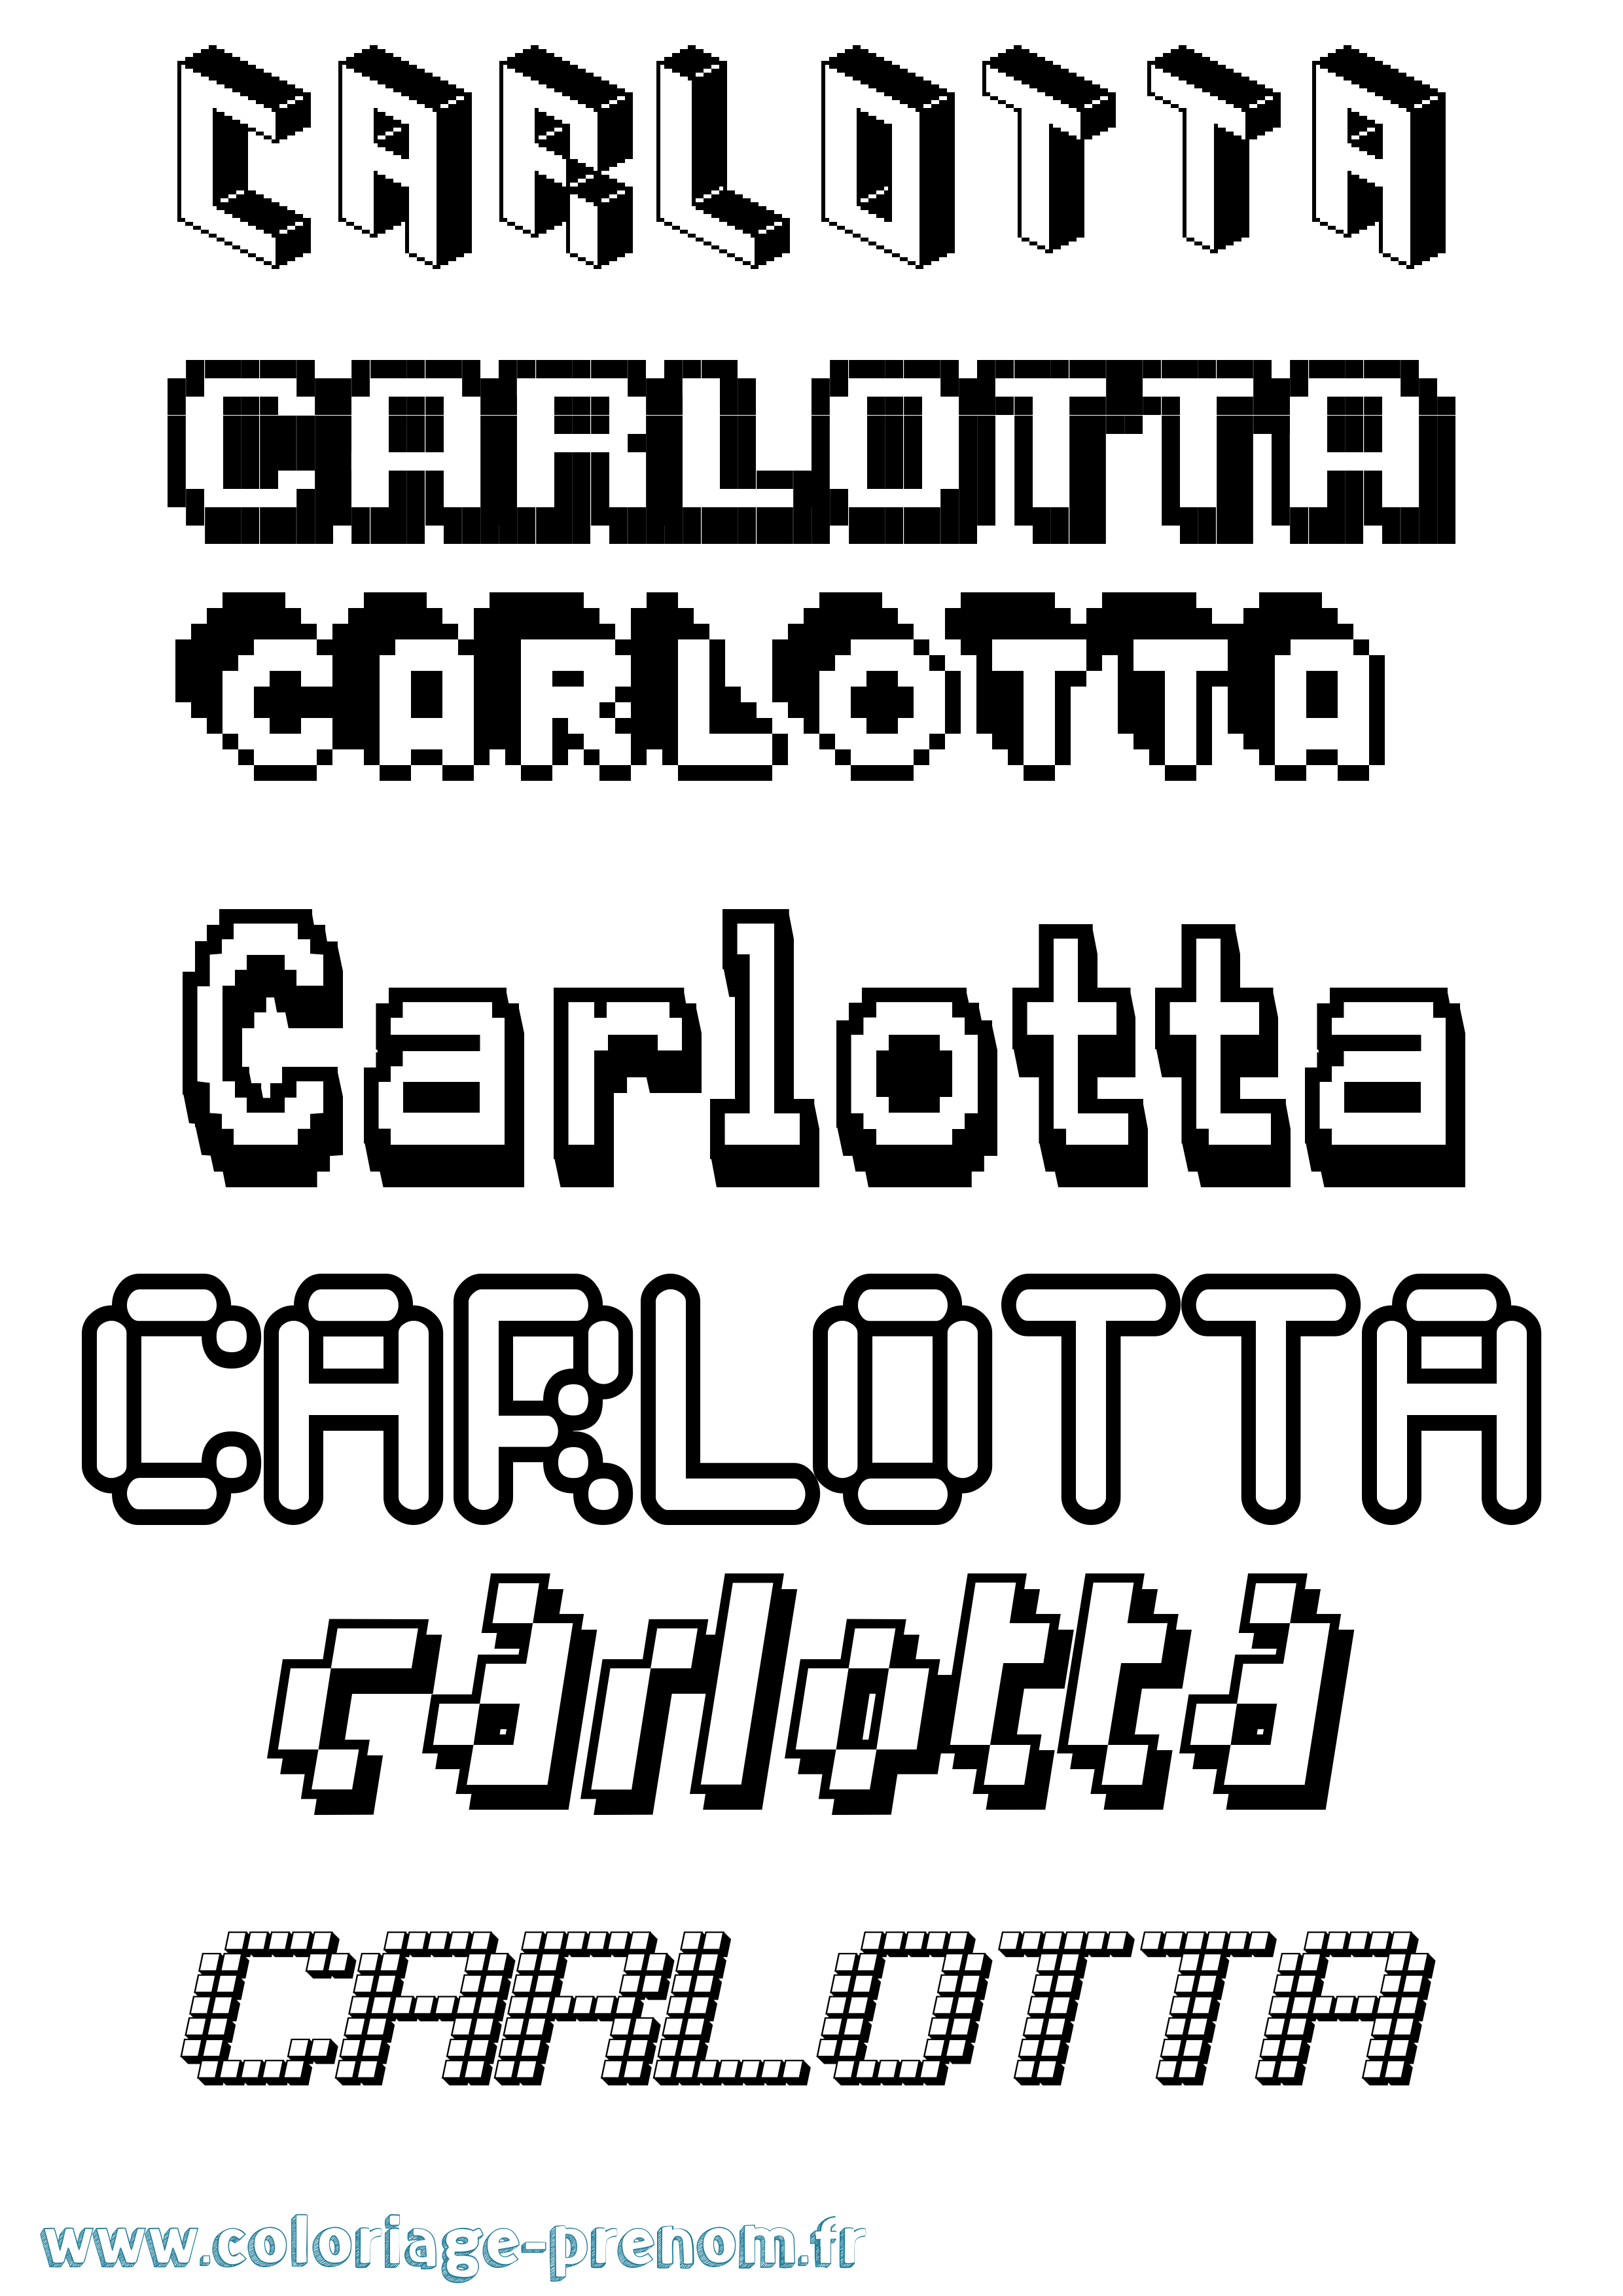 Coloriage prénom Carlotta Pixel